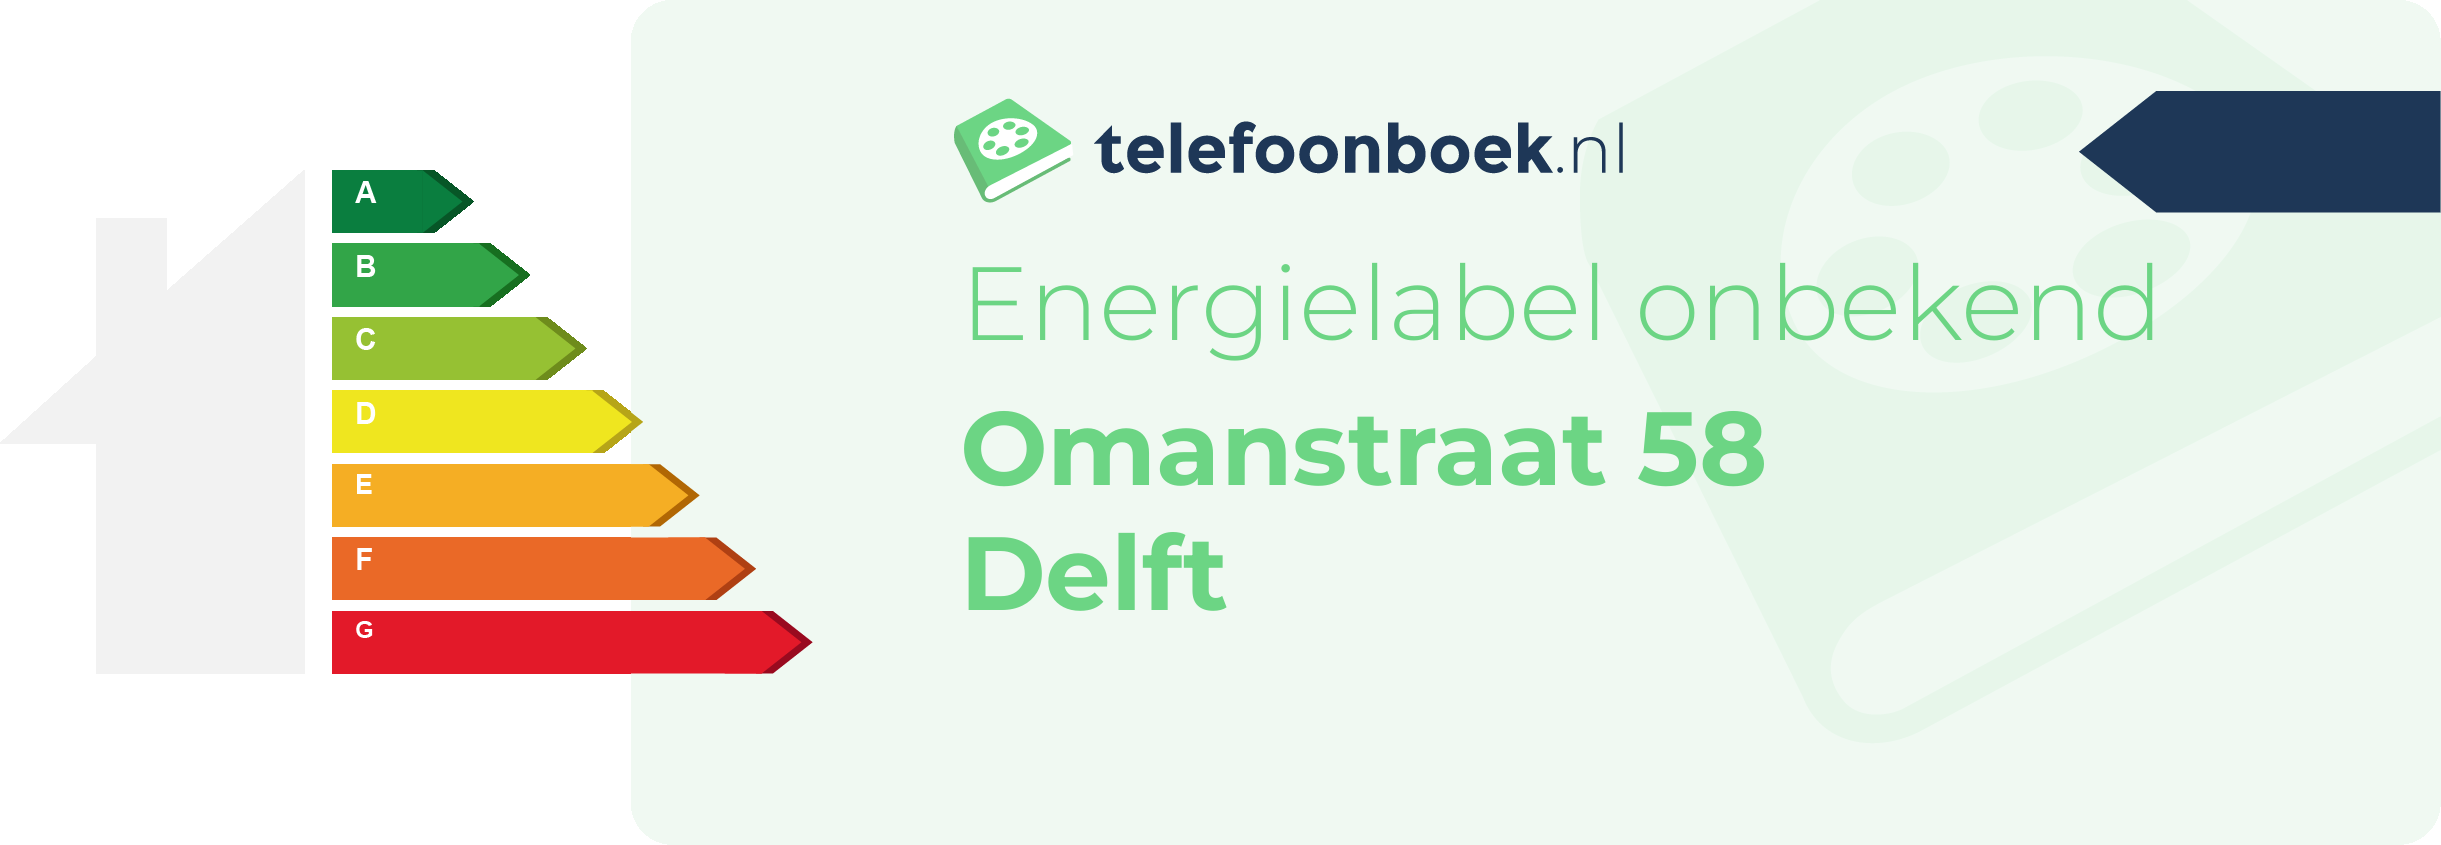 Energielabel Omanstraat 58 Delft